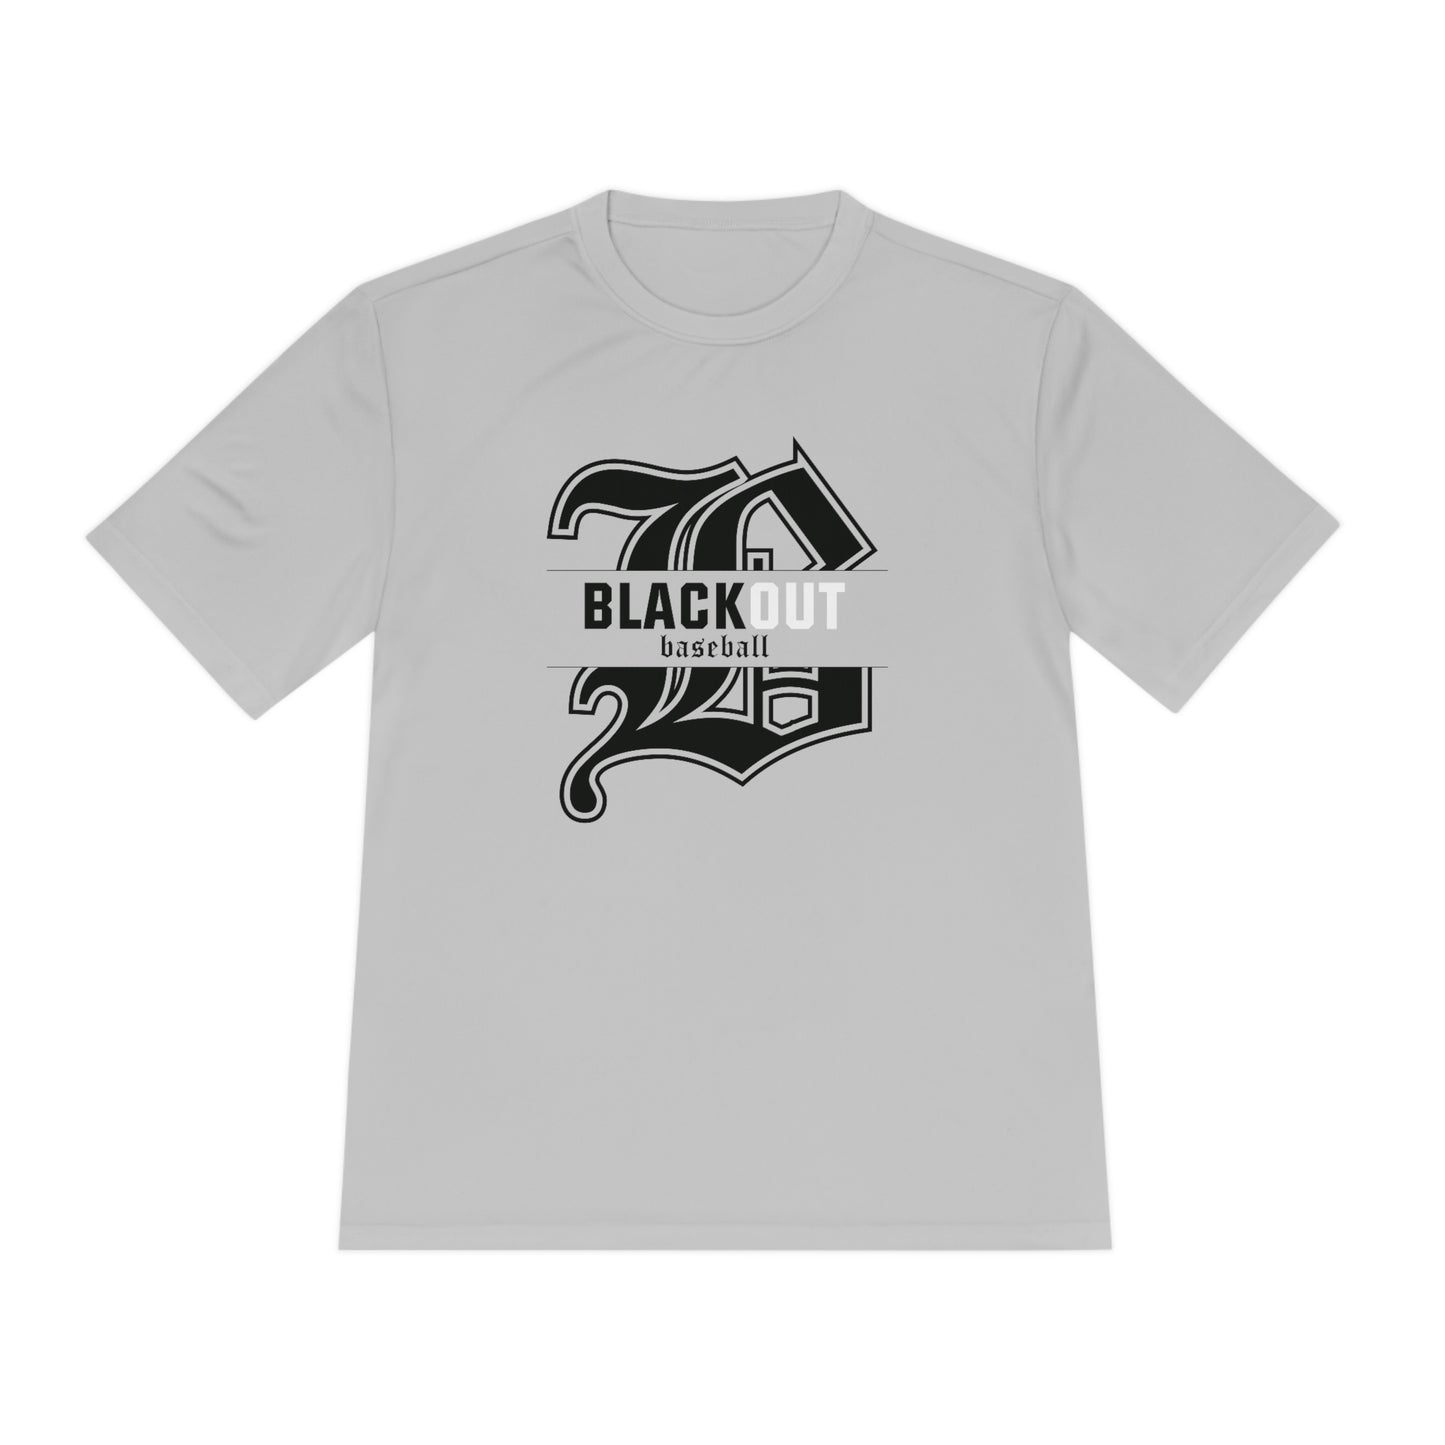 ADULT - "Blackout Baseball" Moisture-Wicking T-Shirt - (Black, White, or Gray)